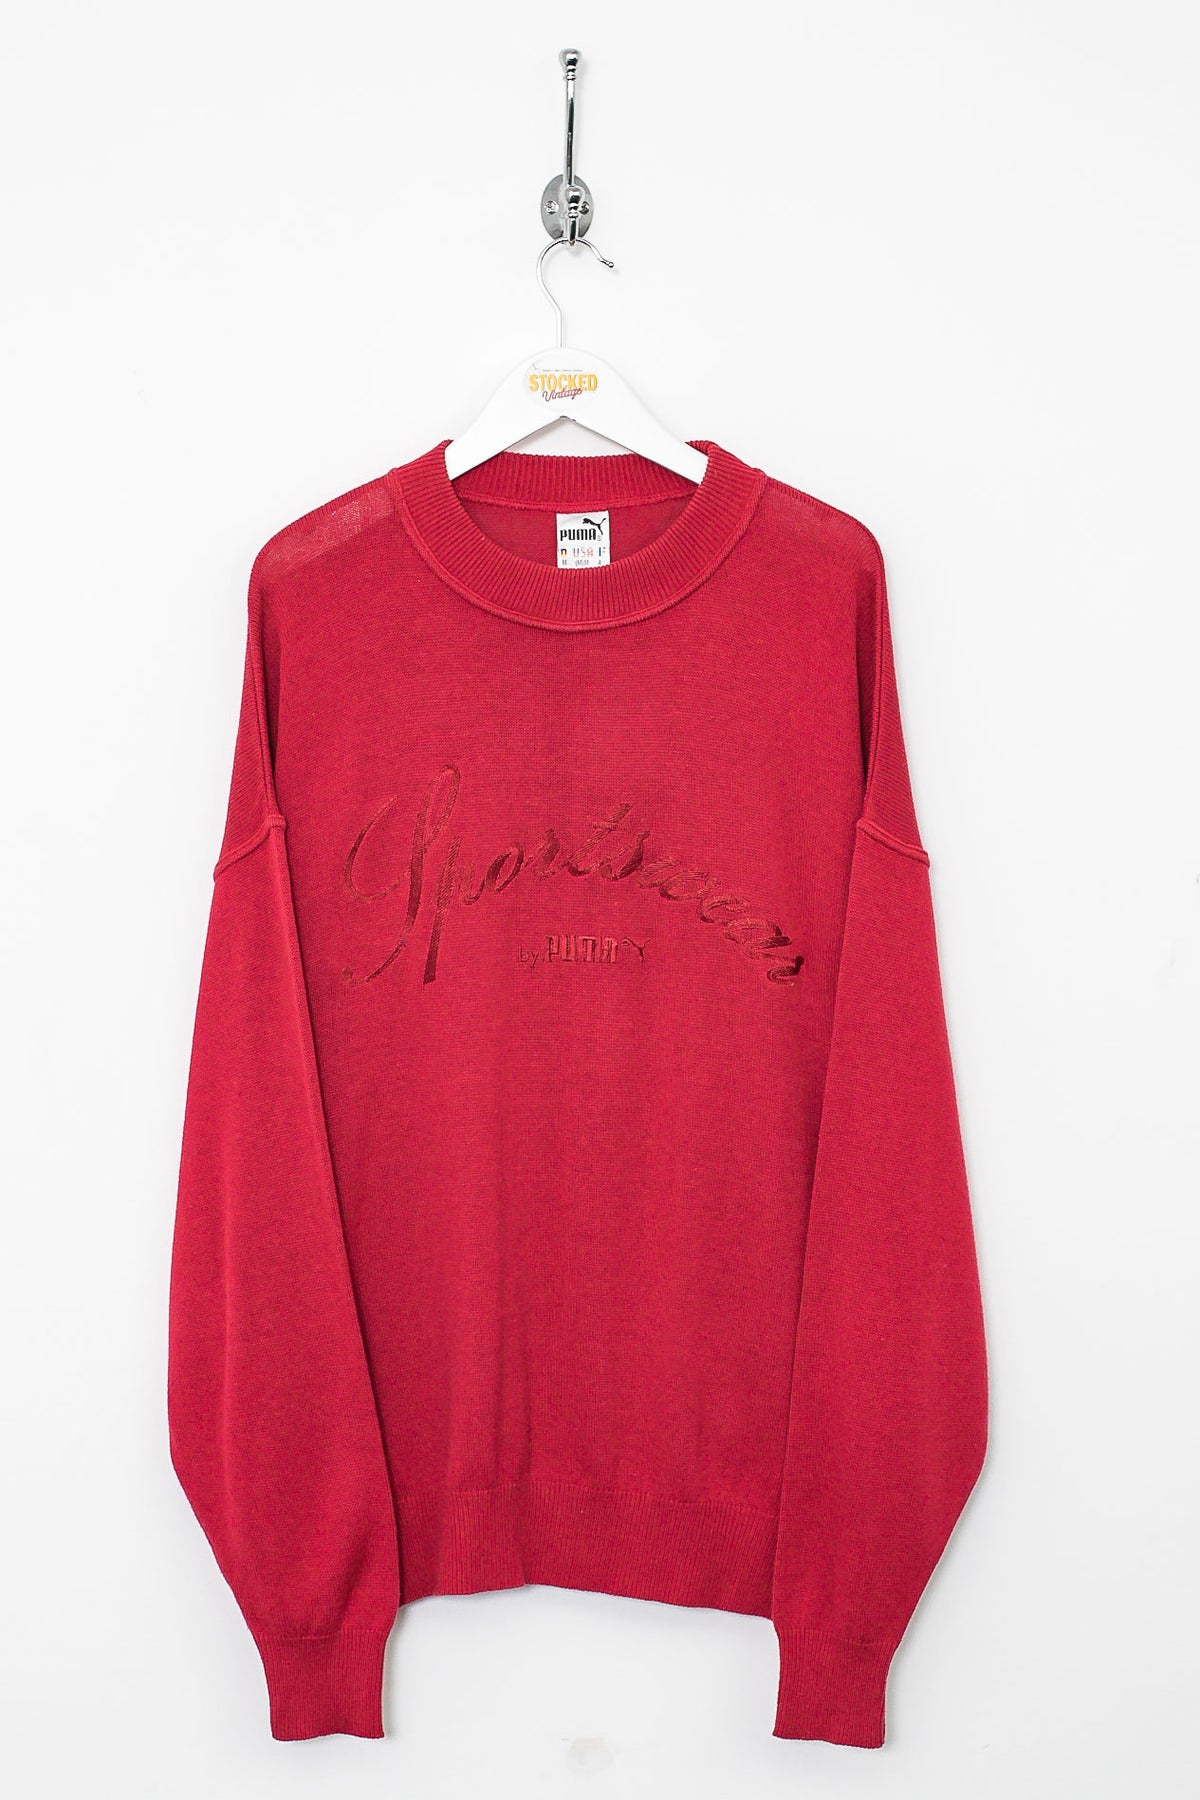 90s Puma Knit Sweatshirt (L)